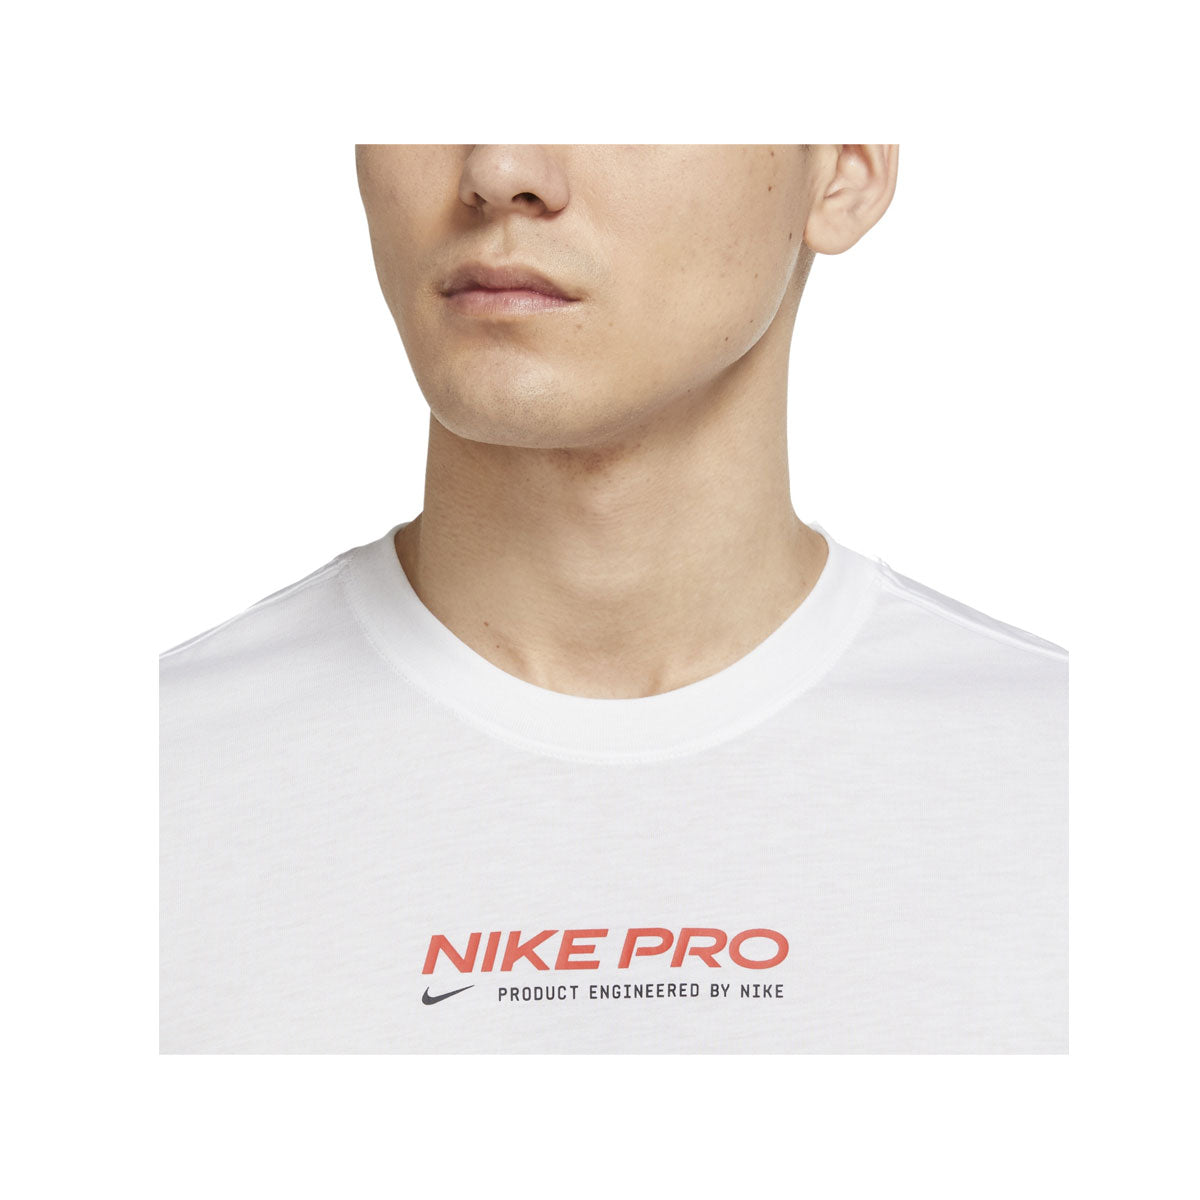 Nike Pro Men's Dri-FIT Training T-Shirt